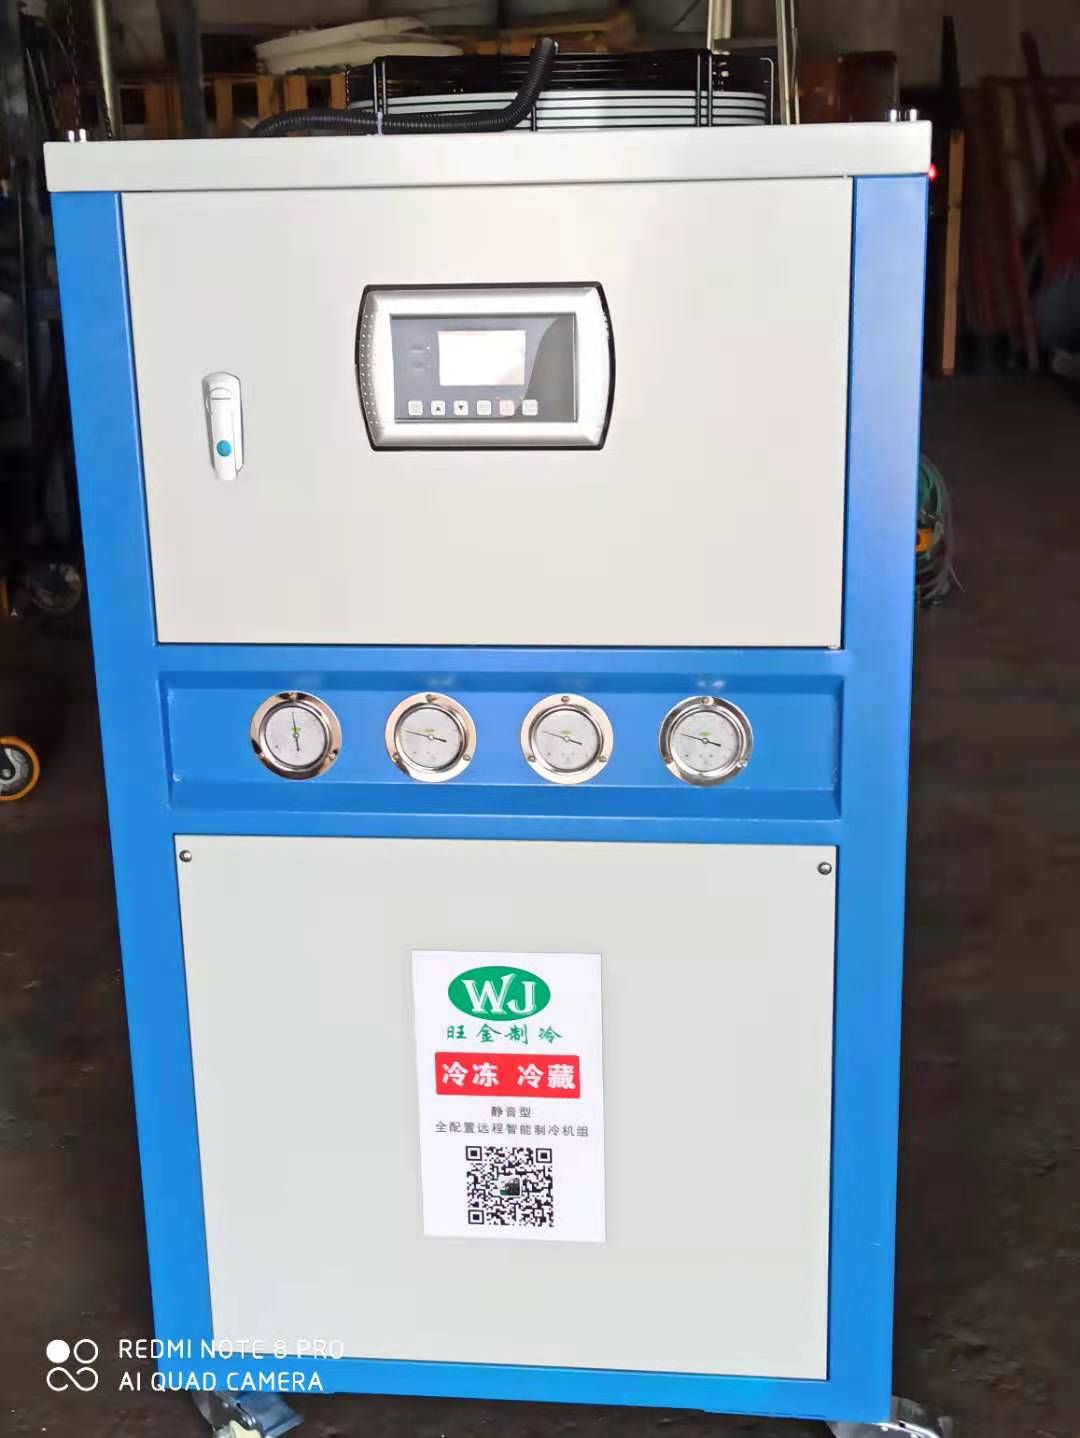 广州市WJ10HP风冷式冷水机组厂家WJ10HP风冷式冷水机组厂家专业生产、维修、保养一条龙服务